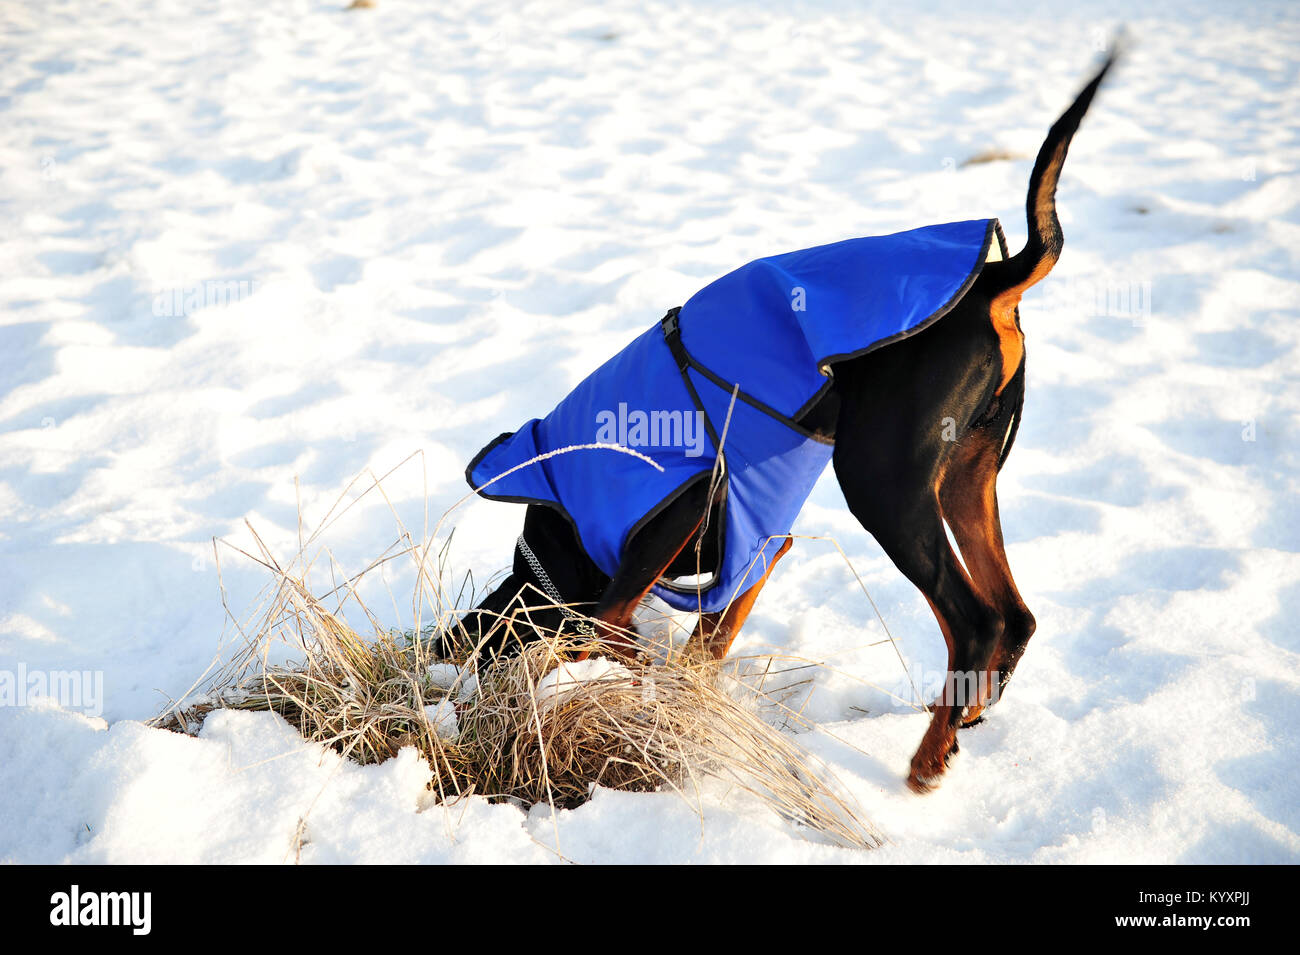 Doberman chien noir creuser dans la neige et l'herbe avec sa longue queue en l'air. Tête couverte. Le chien est vêtu d'un manteau bleu. Snow White background Banque D'Images